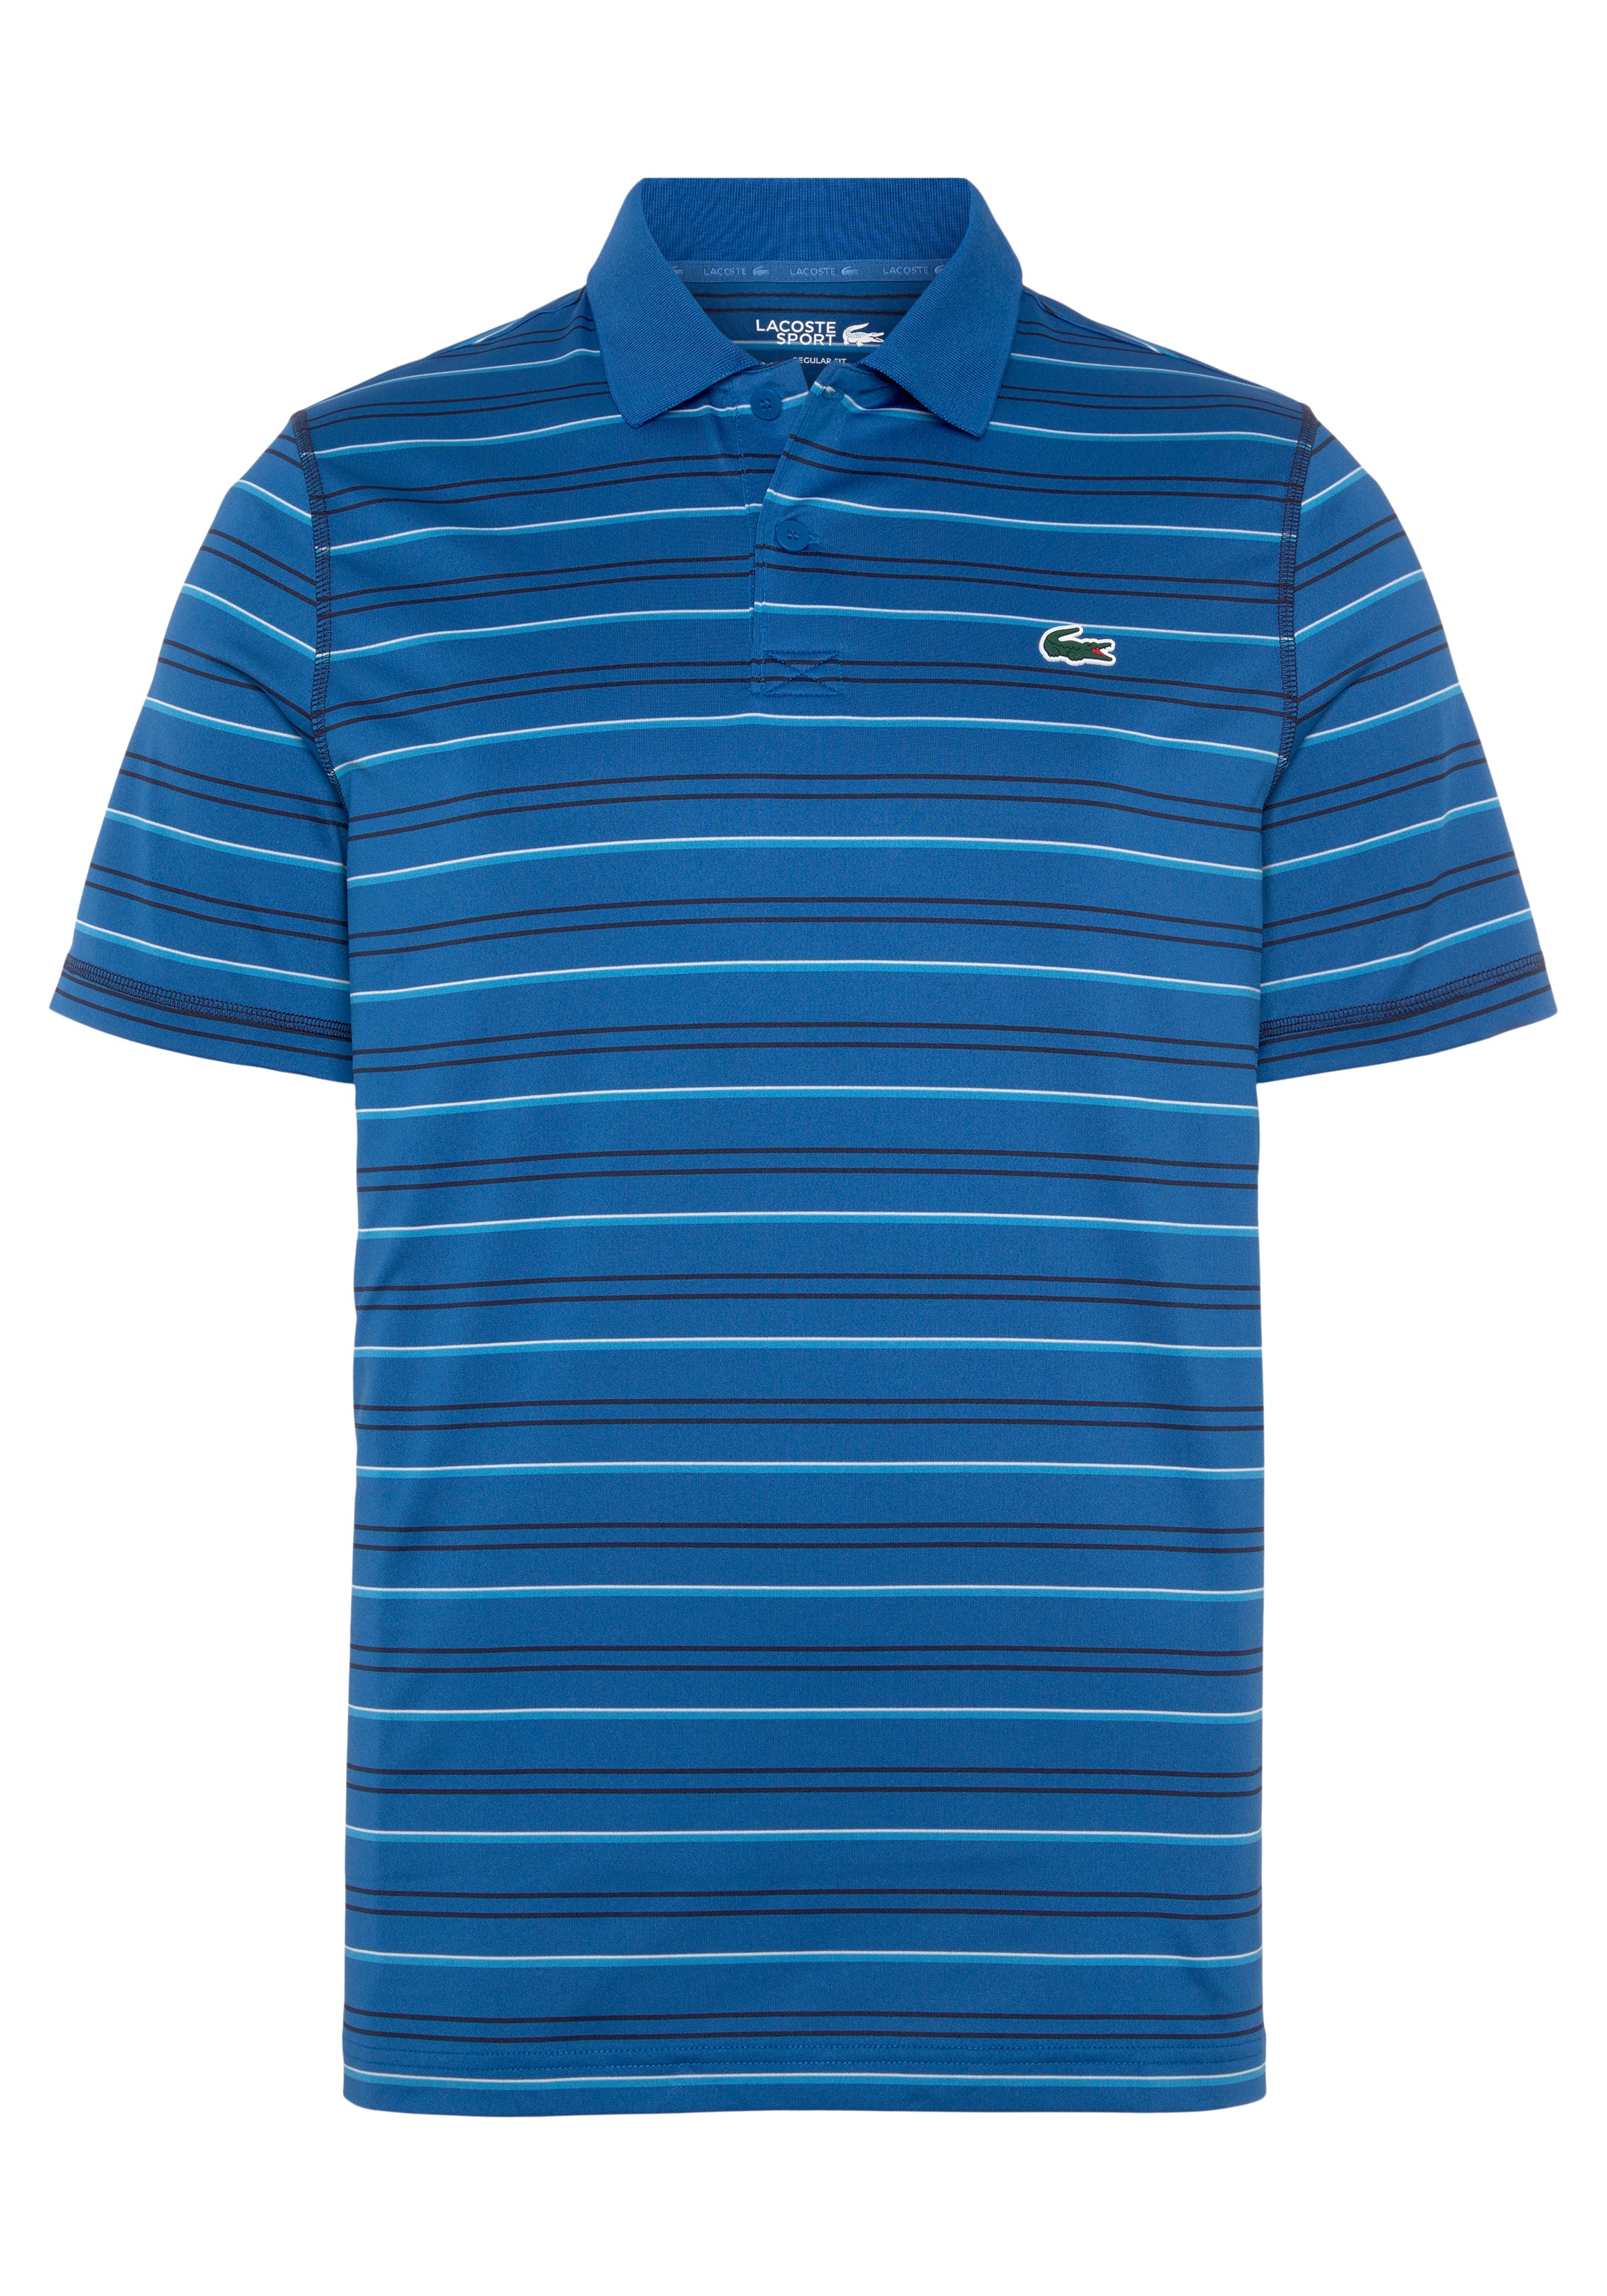 Lacoste Poloshirt, recyceltes Polyester, atmungsaktives Golf Polo Shirt  online shoppen bei OTTO